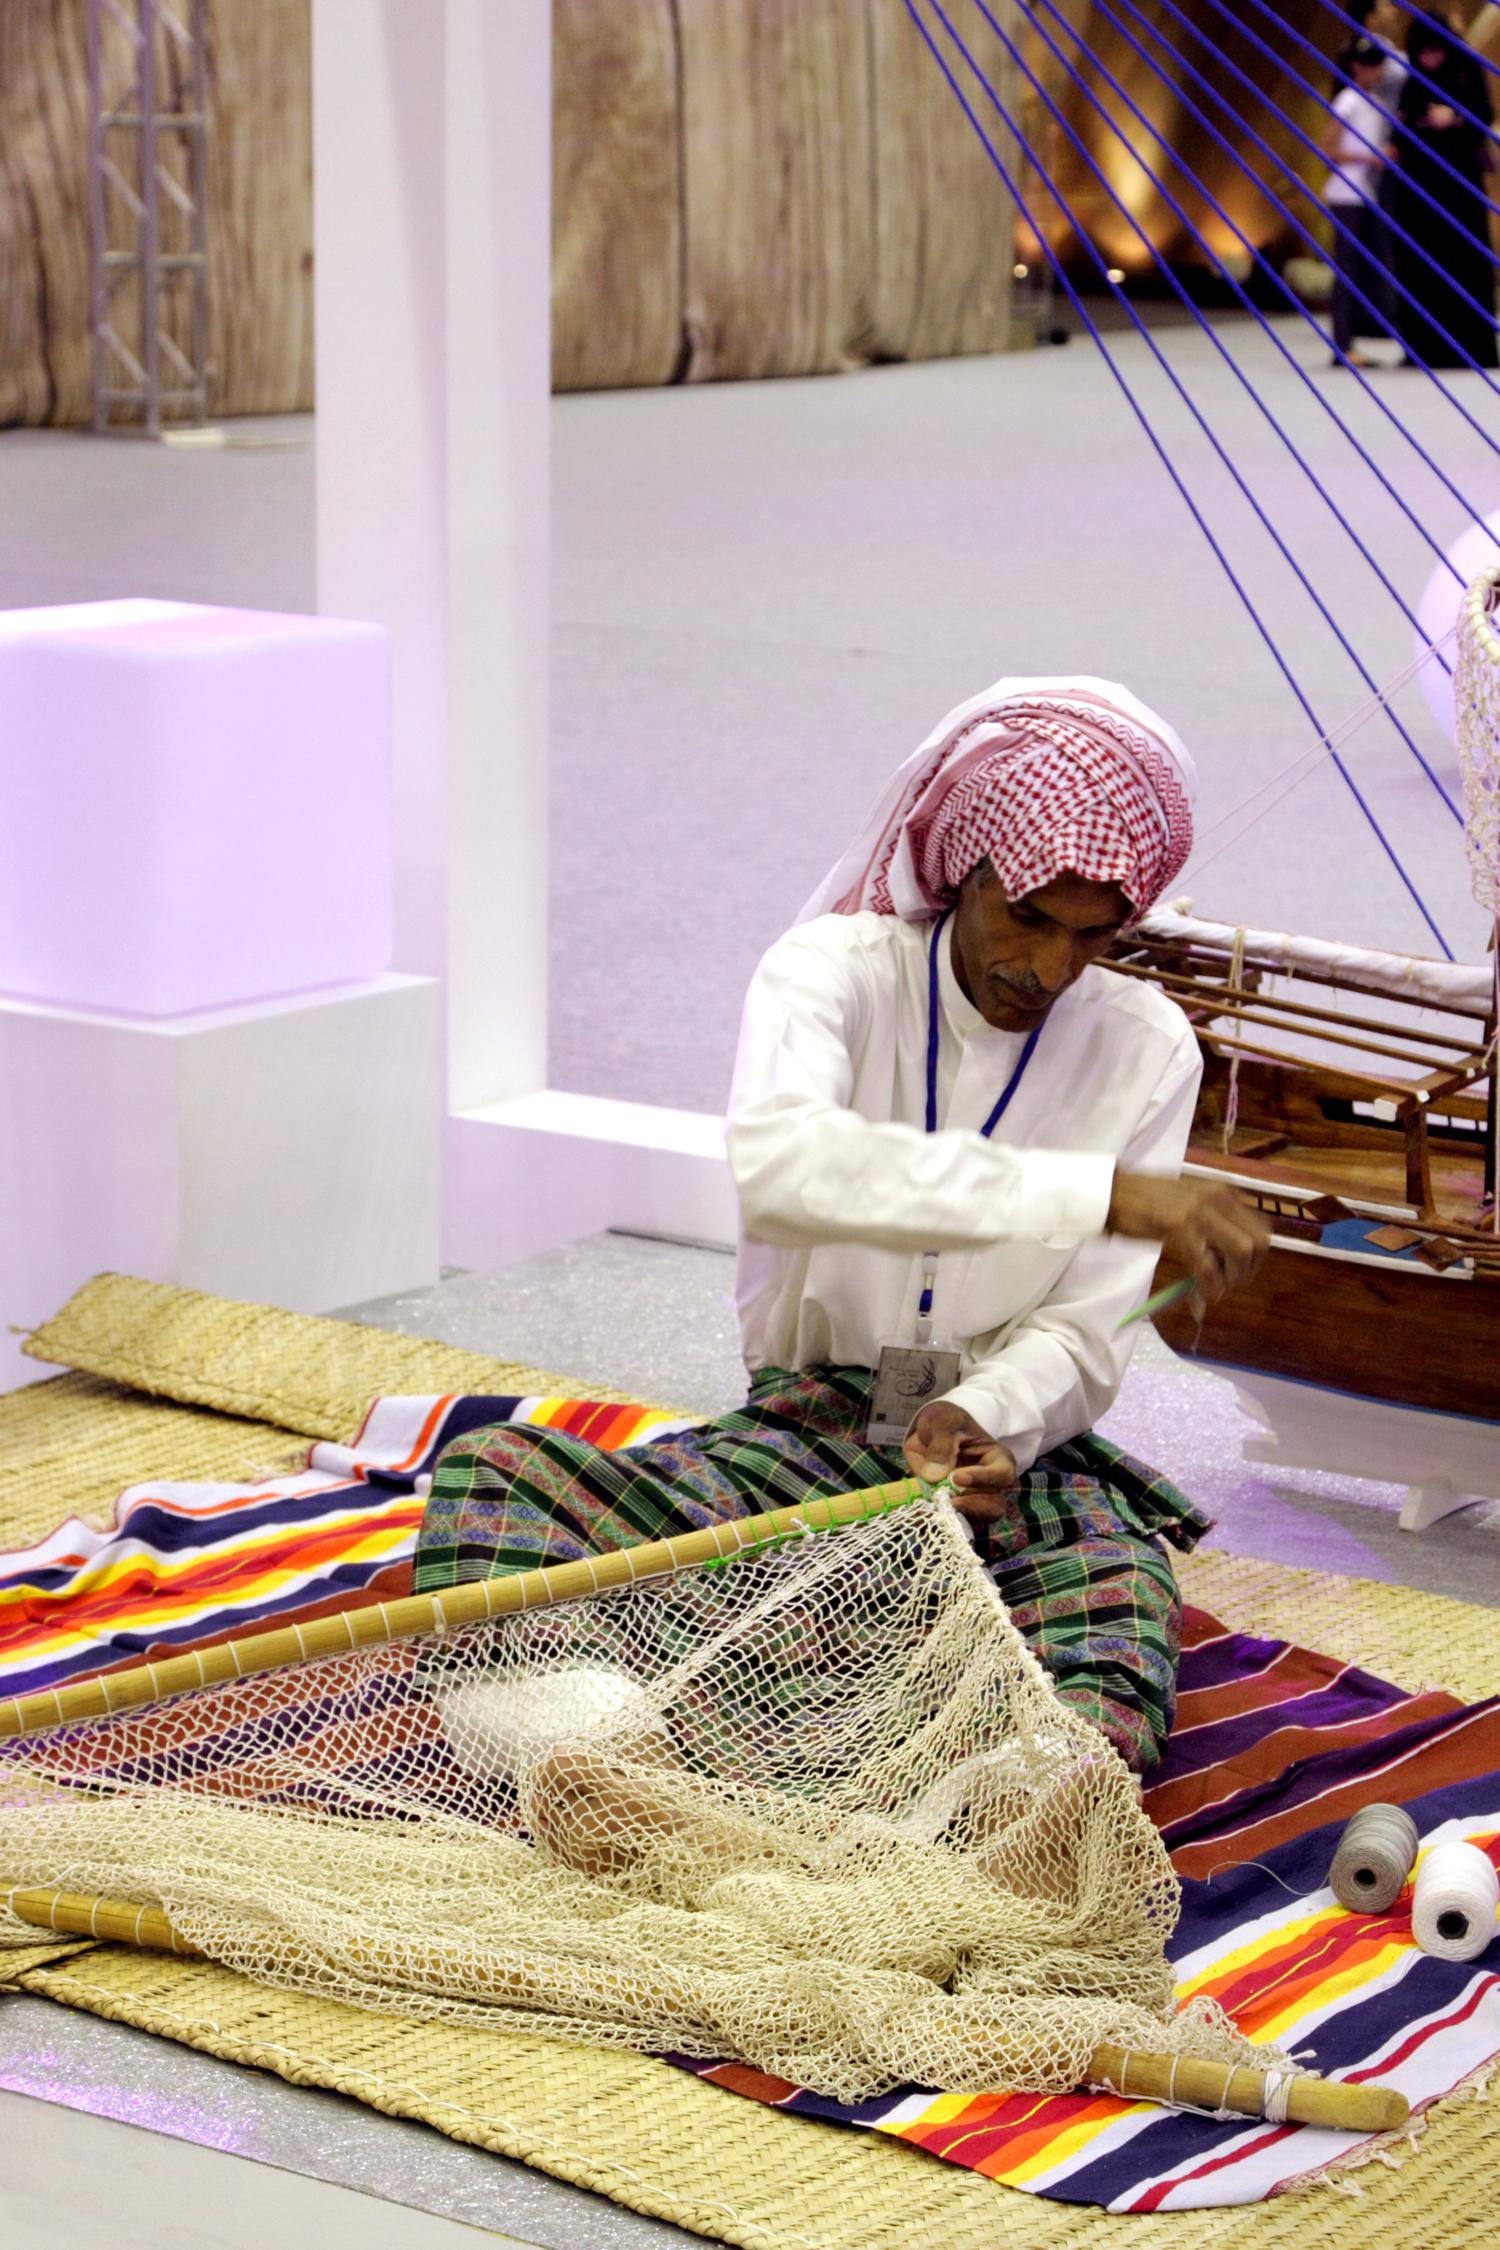 Мастер плетет рыболовную сеть во время фестиваля народного наследия